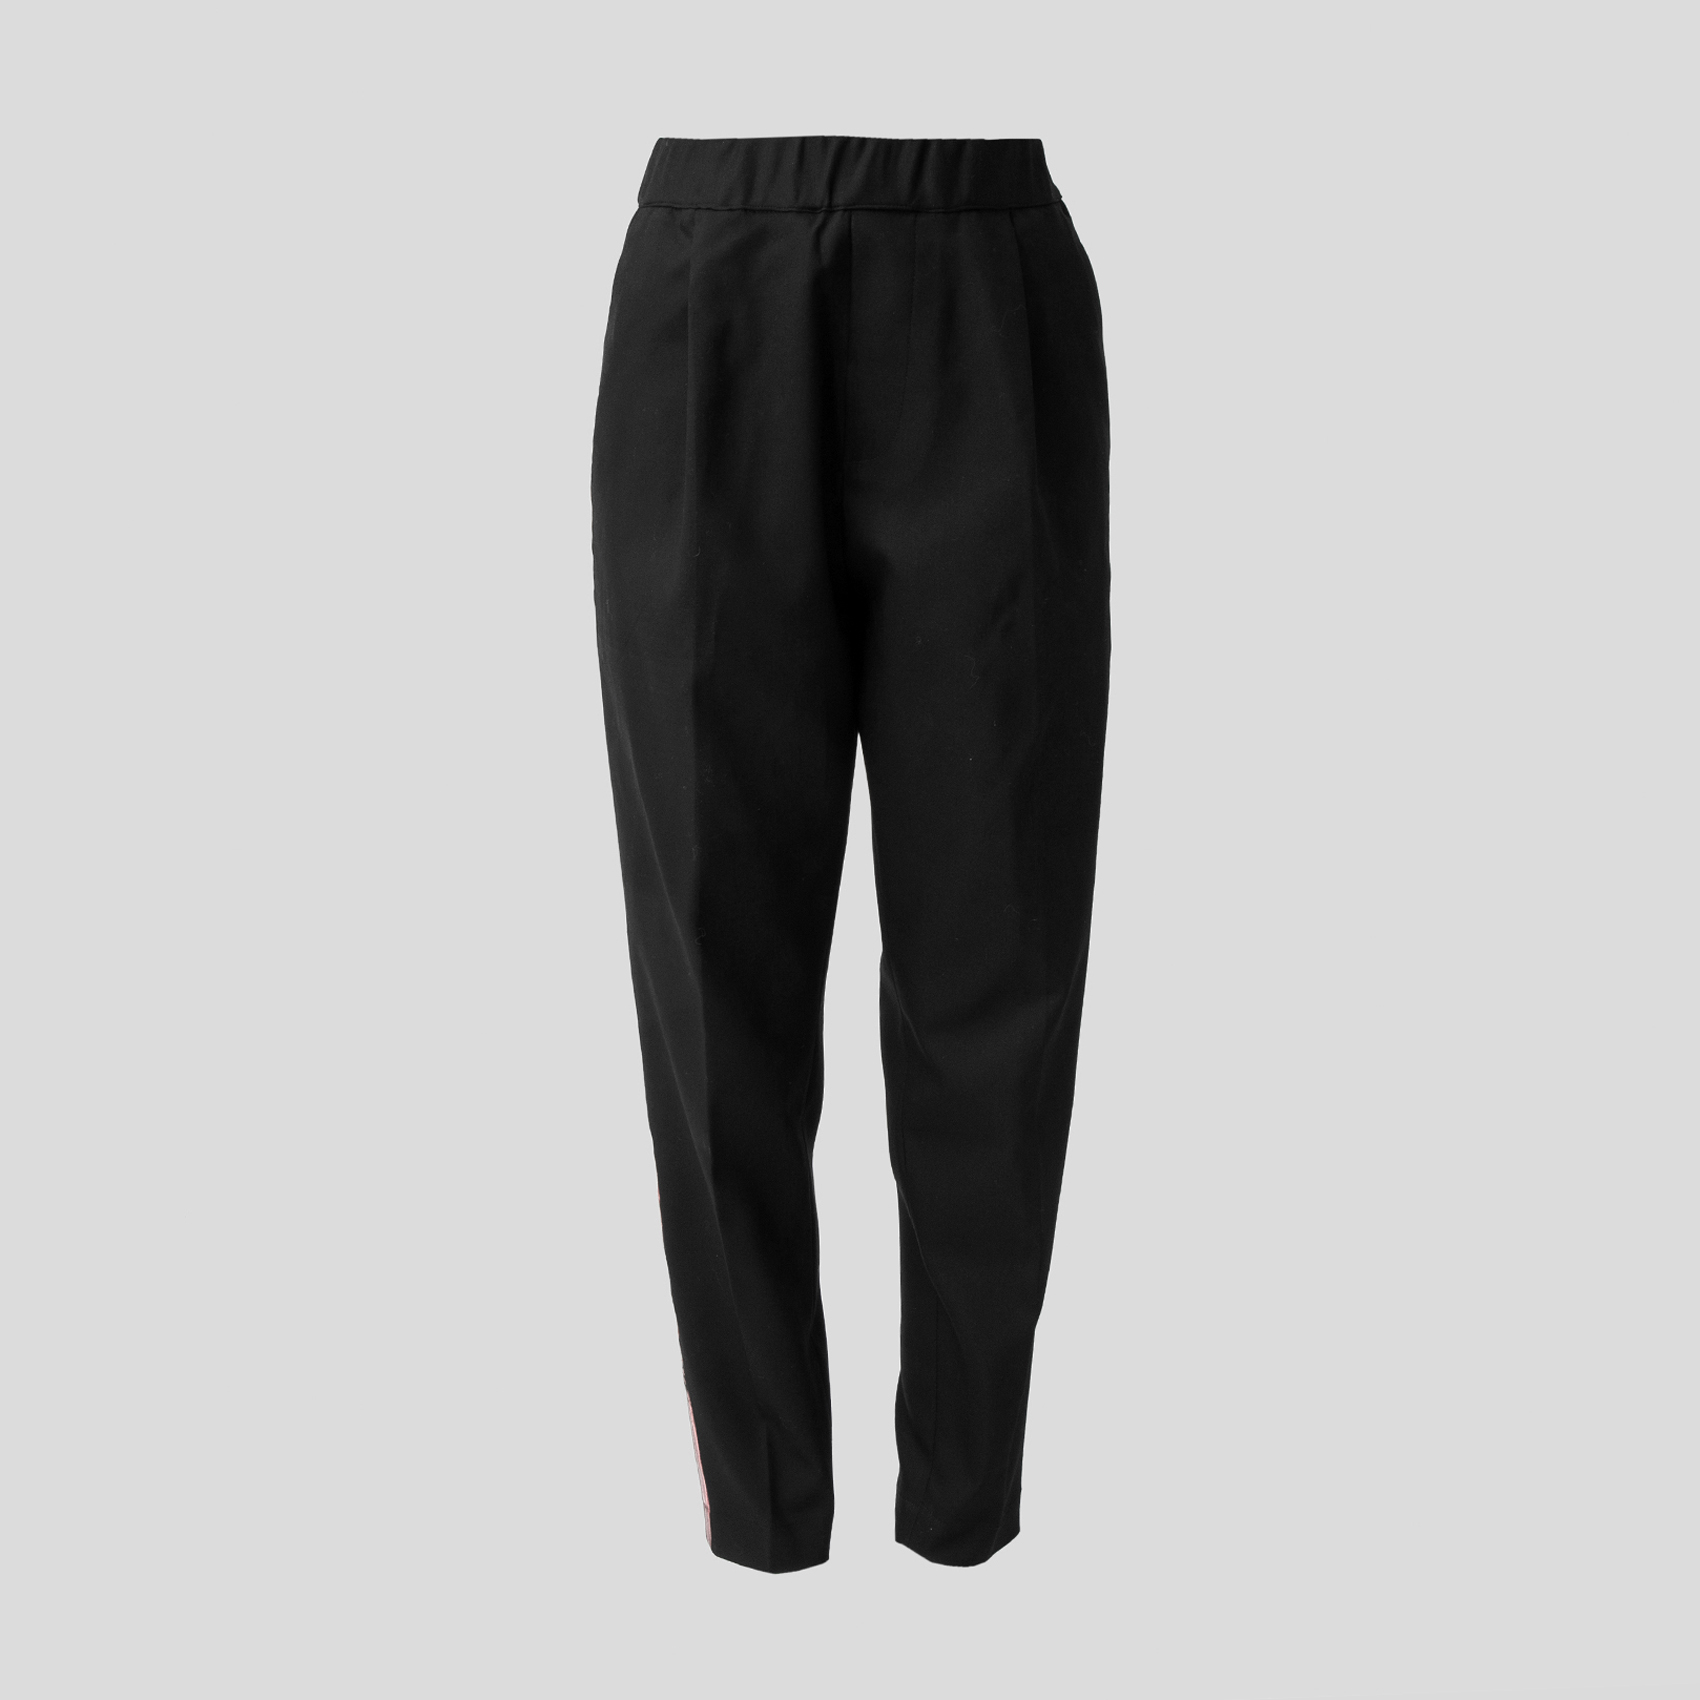 Black Pants Red Stripe In Men's Pants for sale | eBay